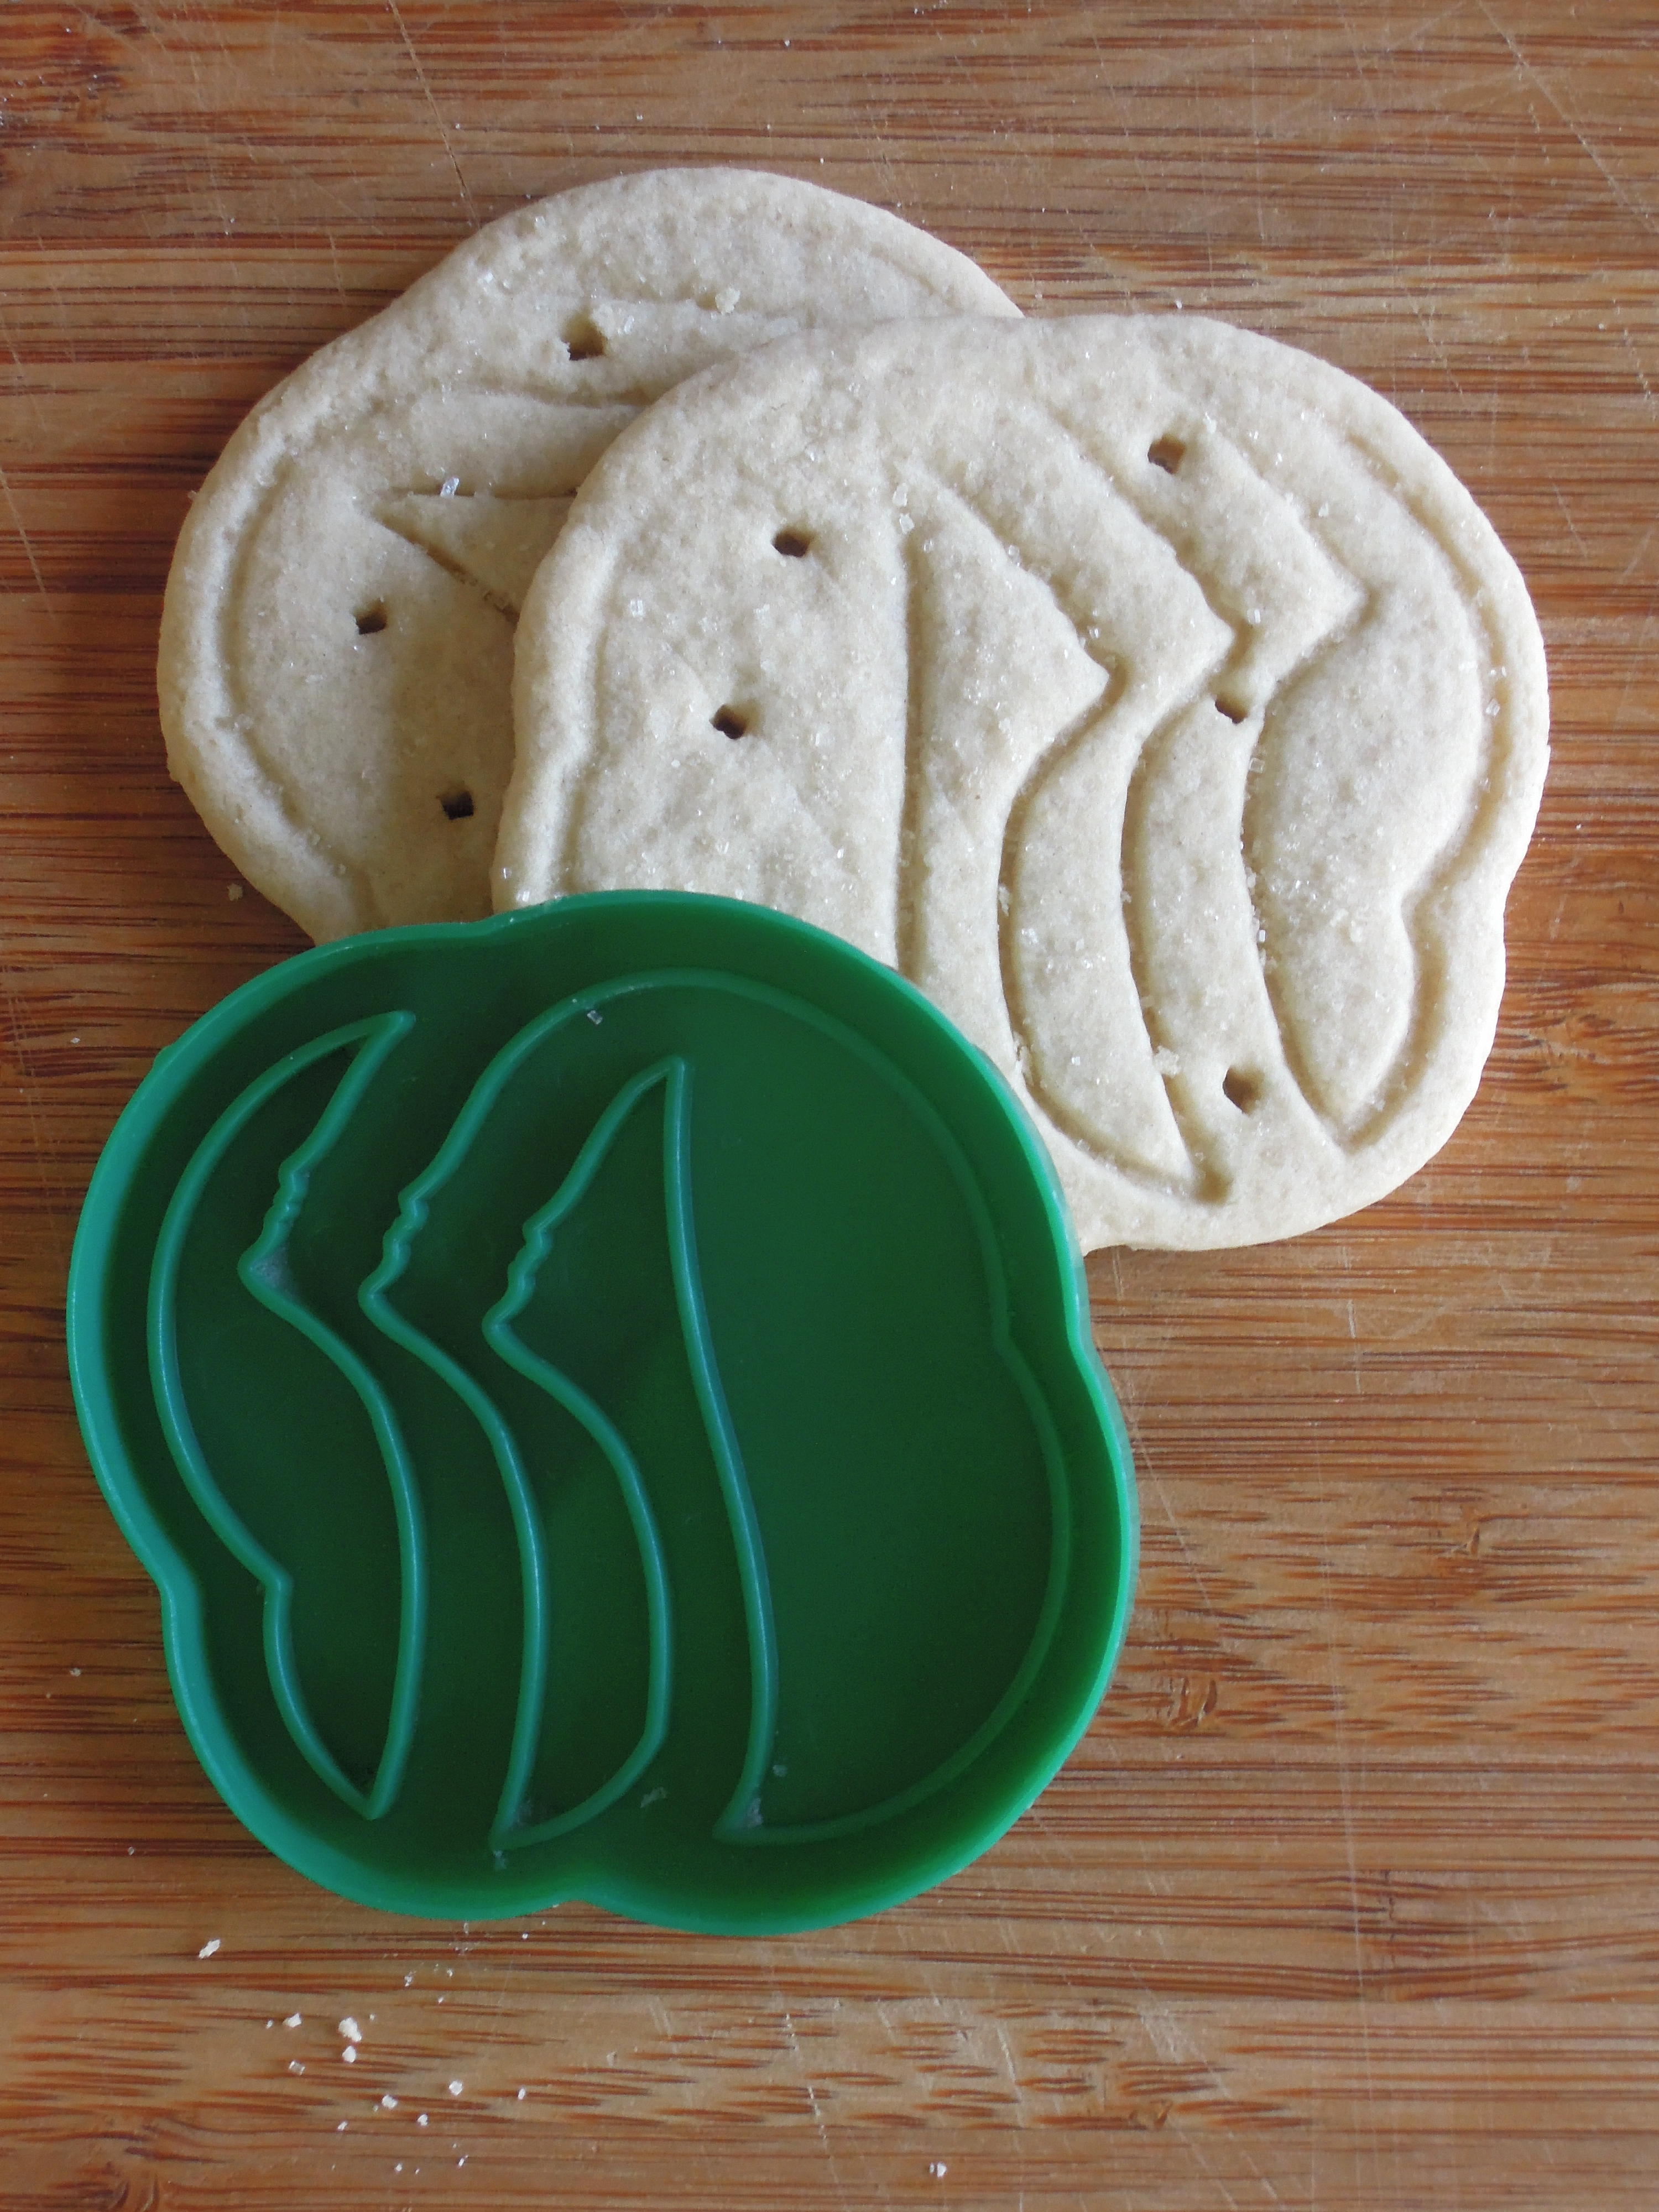 Gluten-free Vegan Trefoil Cookies 